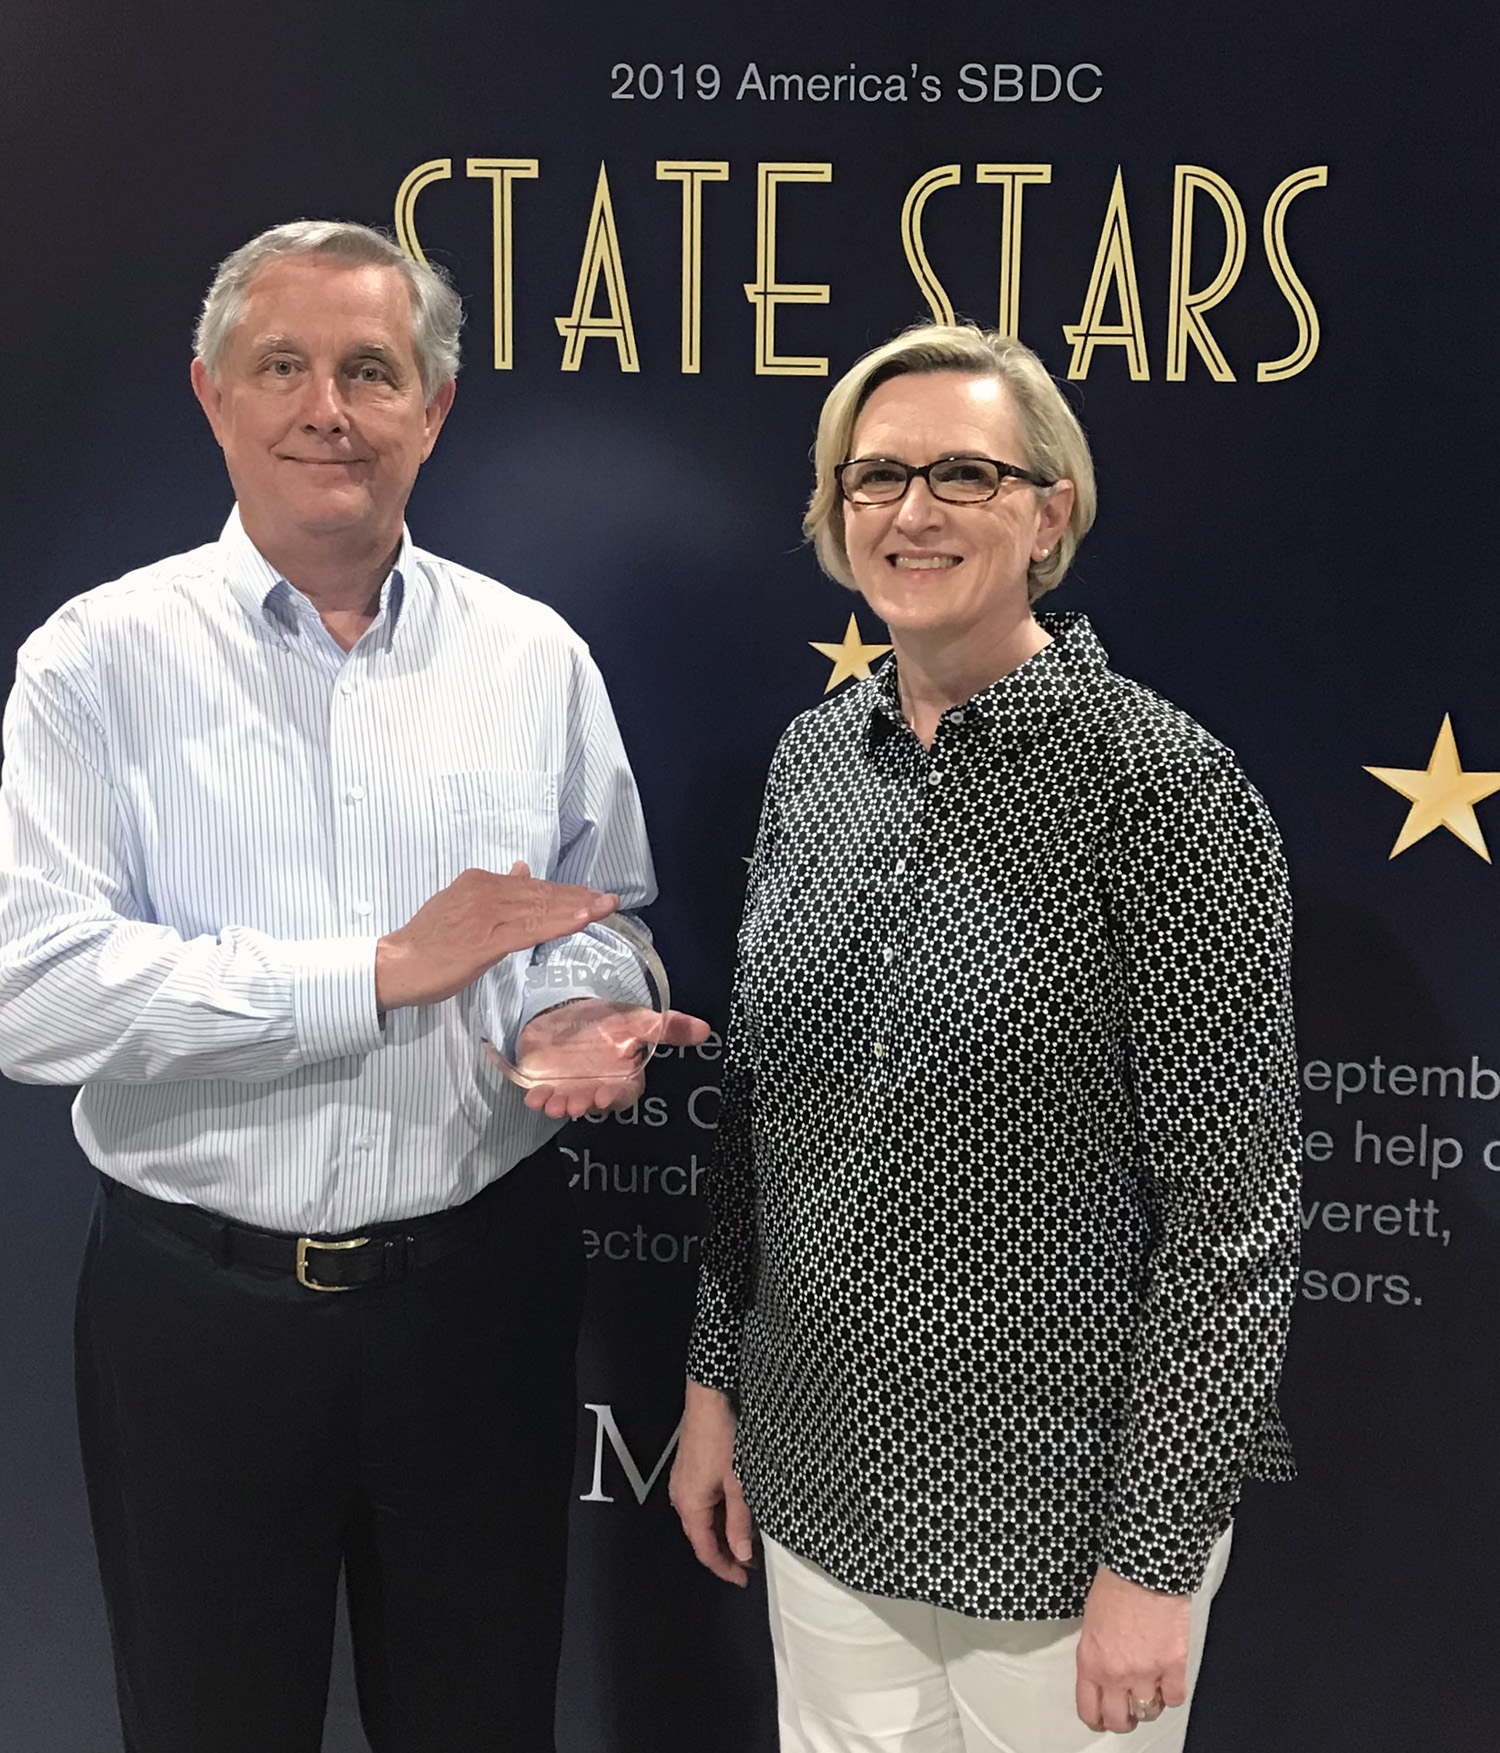 Robert-Laura-State-Star 2019